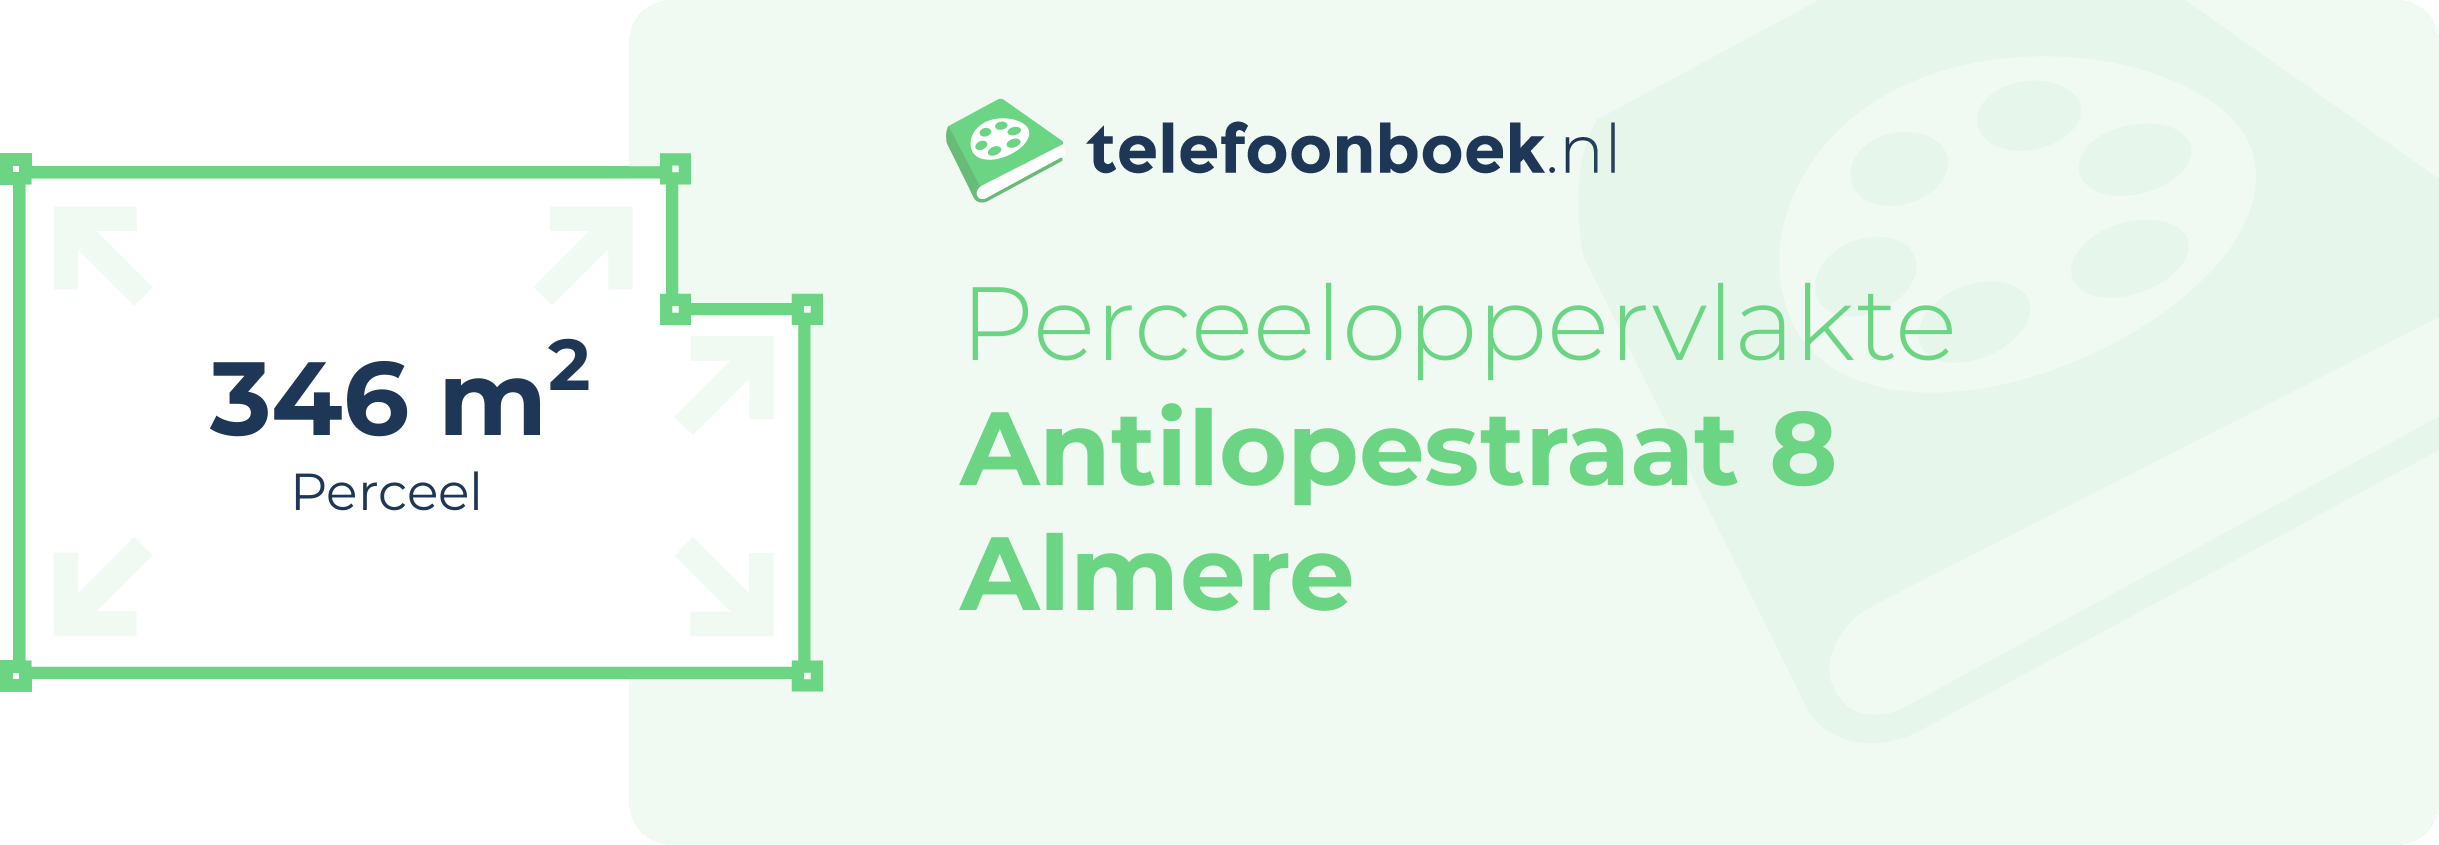 Perceeloppervlakte Antilopestraat 8 Almere